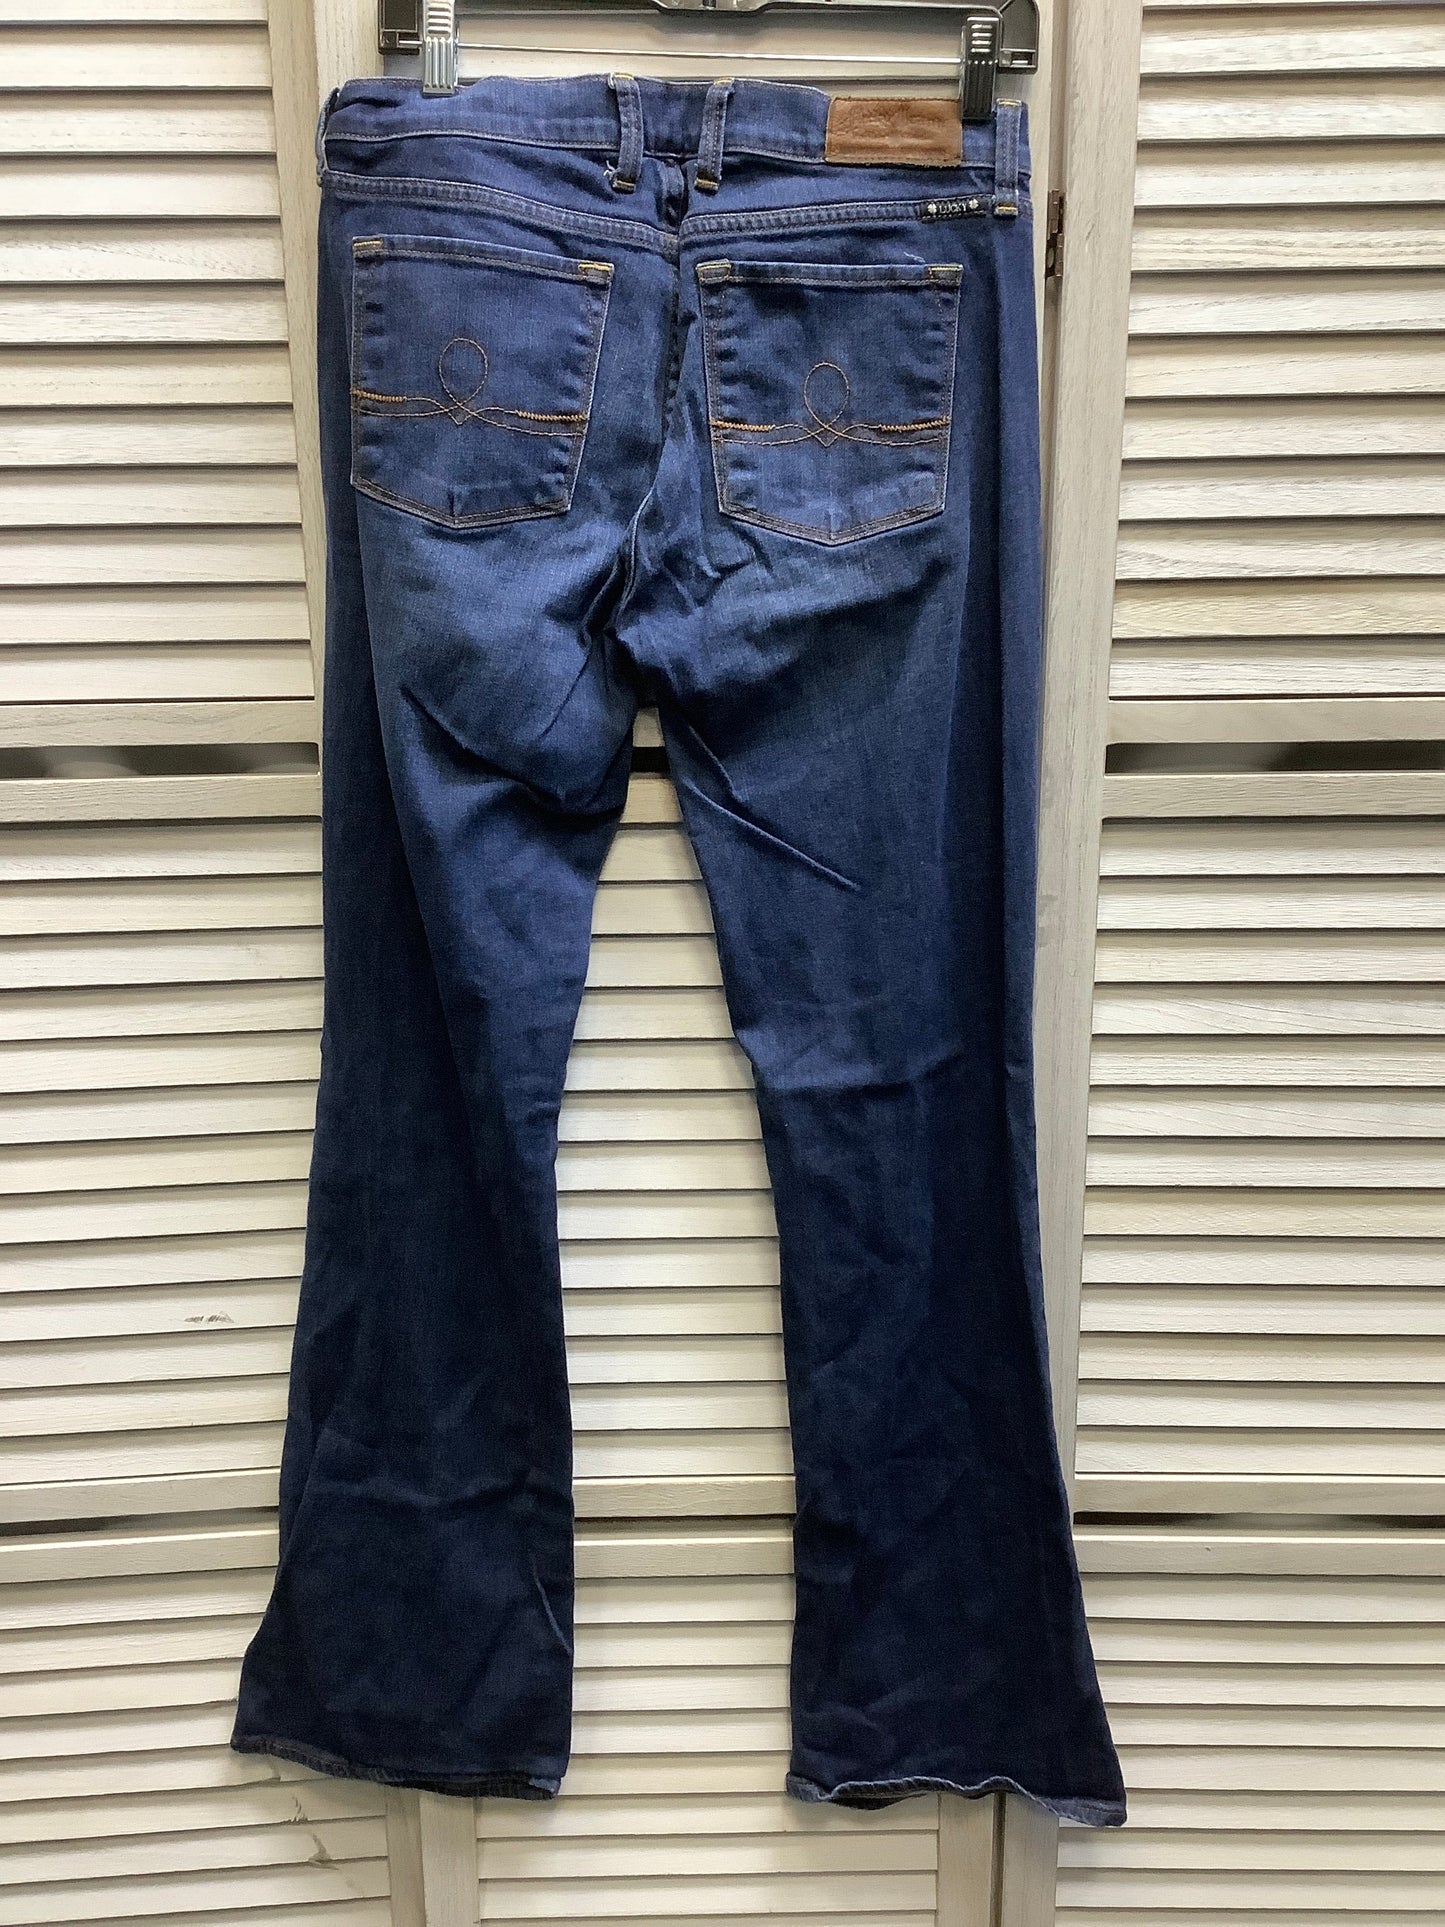 Blue Denim Jeans Boot Cut Lucky Brand, Size 12